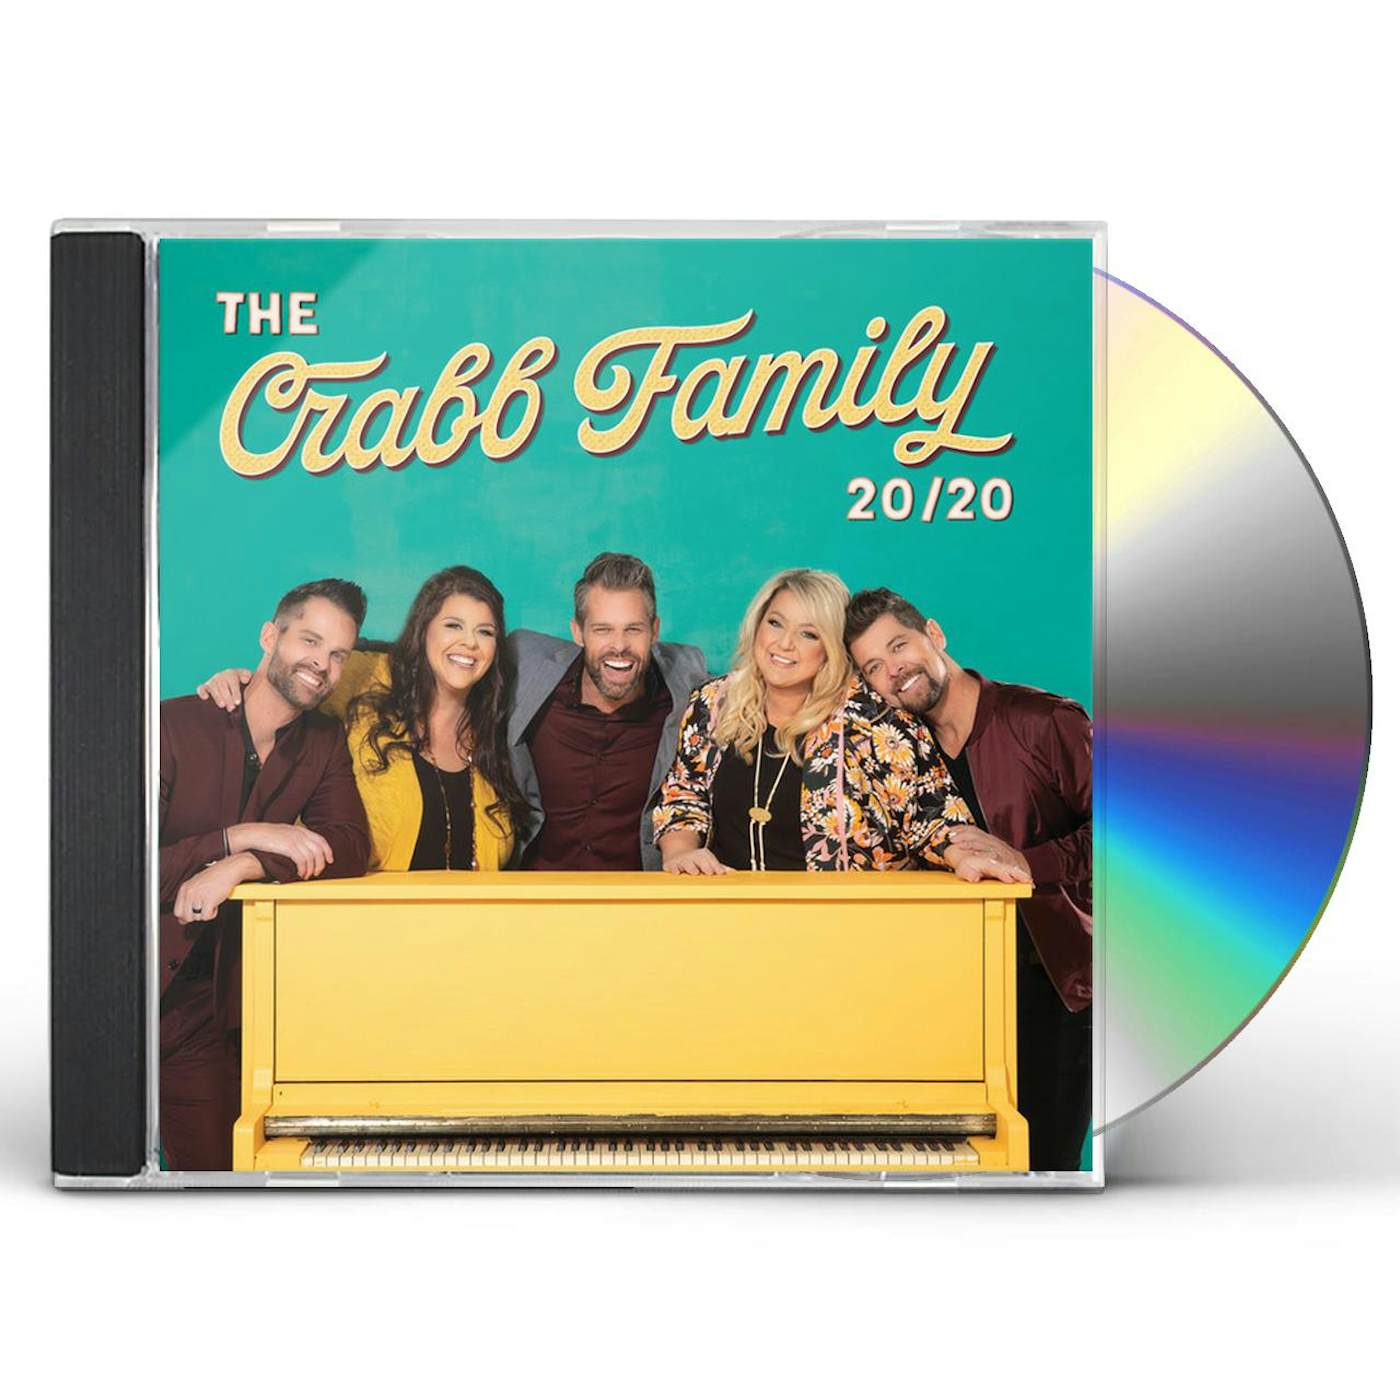 The Crabb Family 20/20 CD